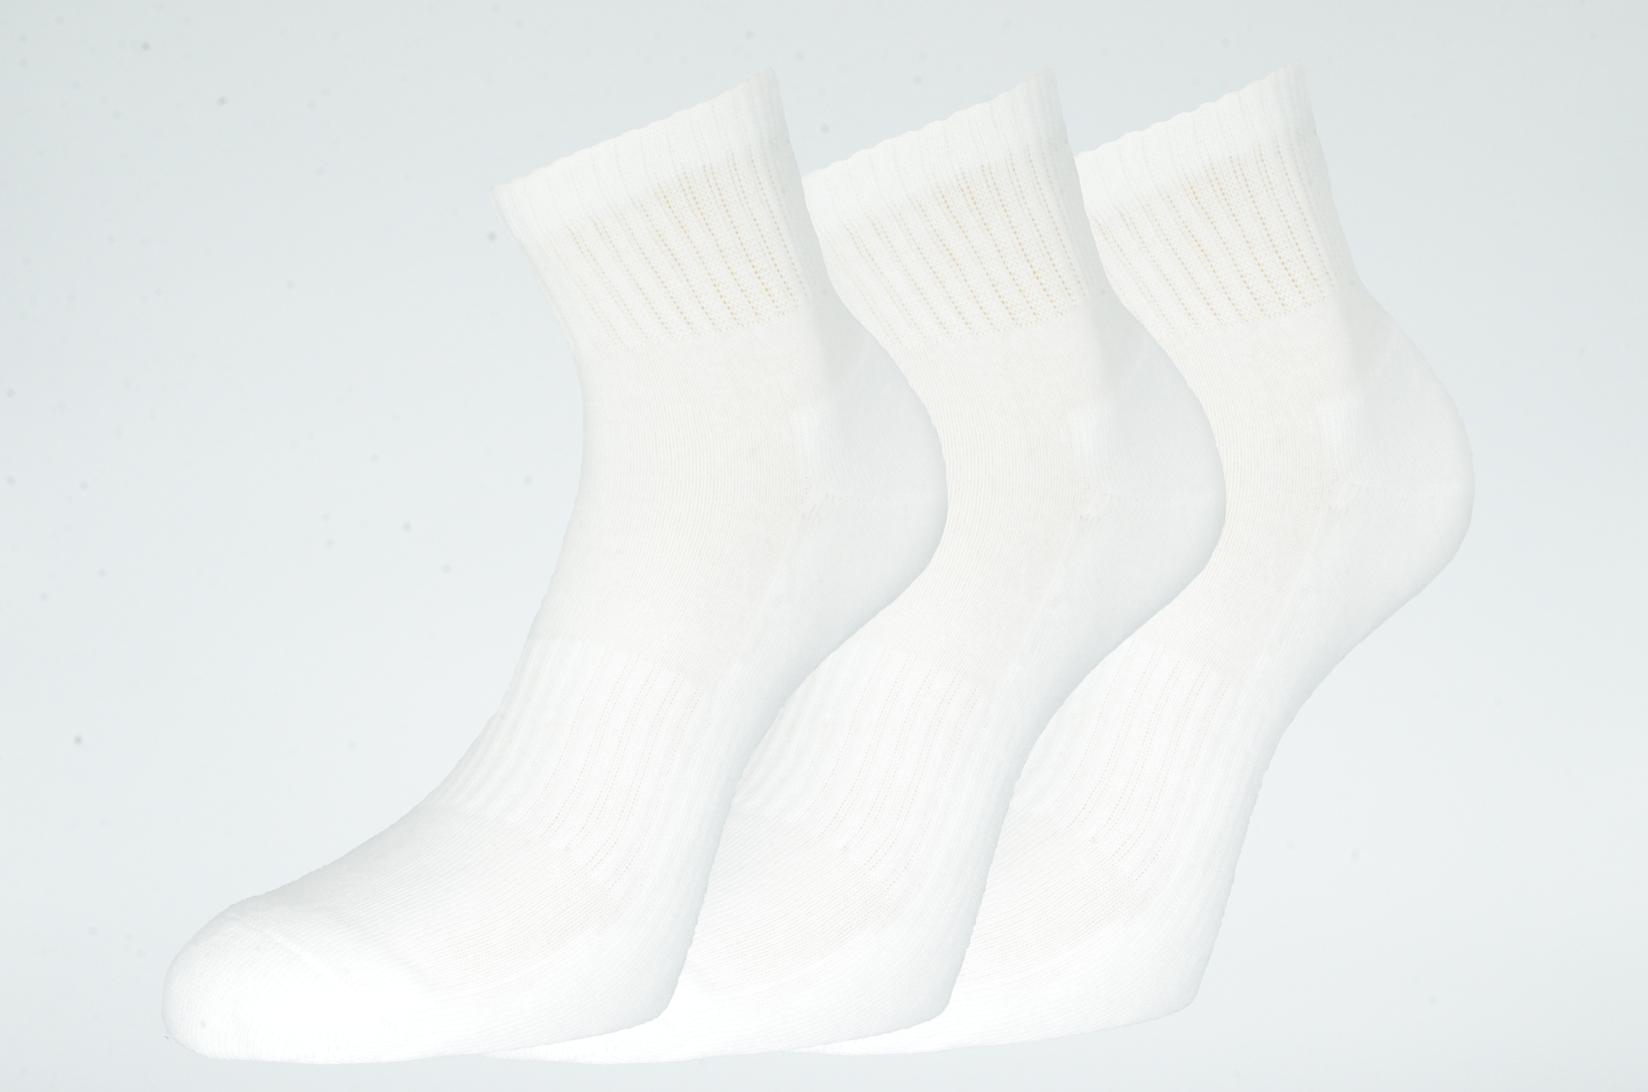 Slike GERBI Sportske čarape Athletic 3/1 art.251 42-44 M1 bele